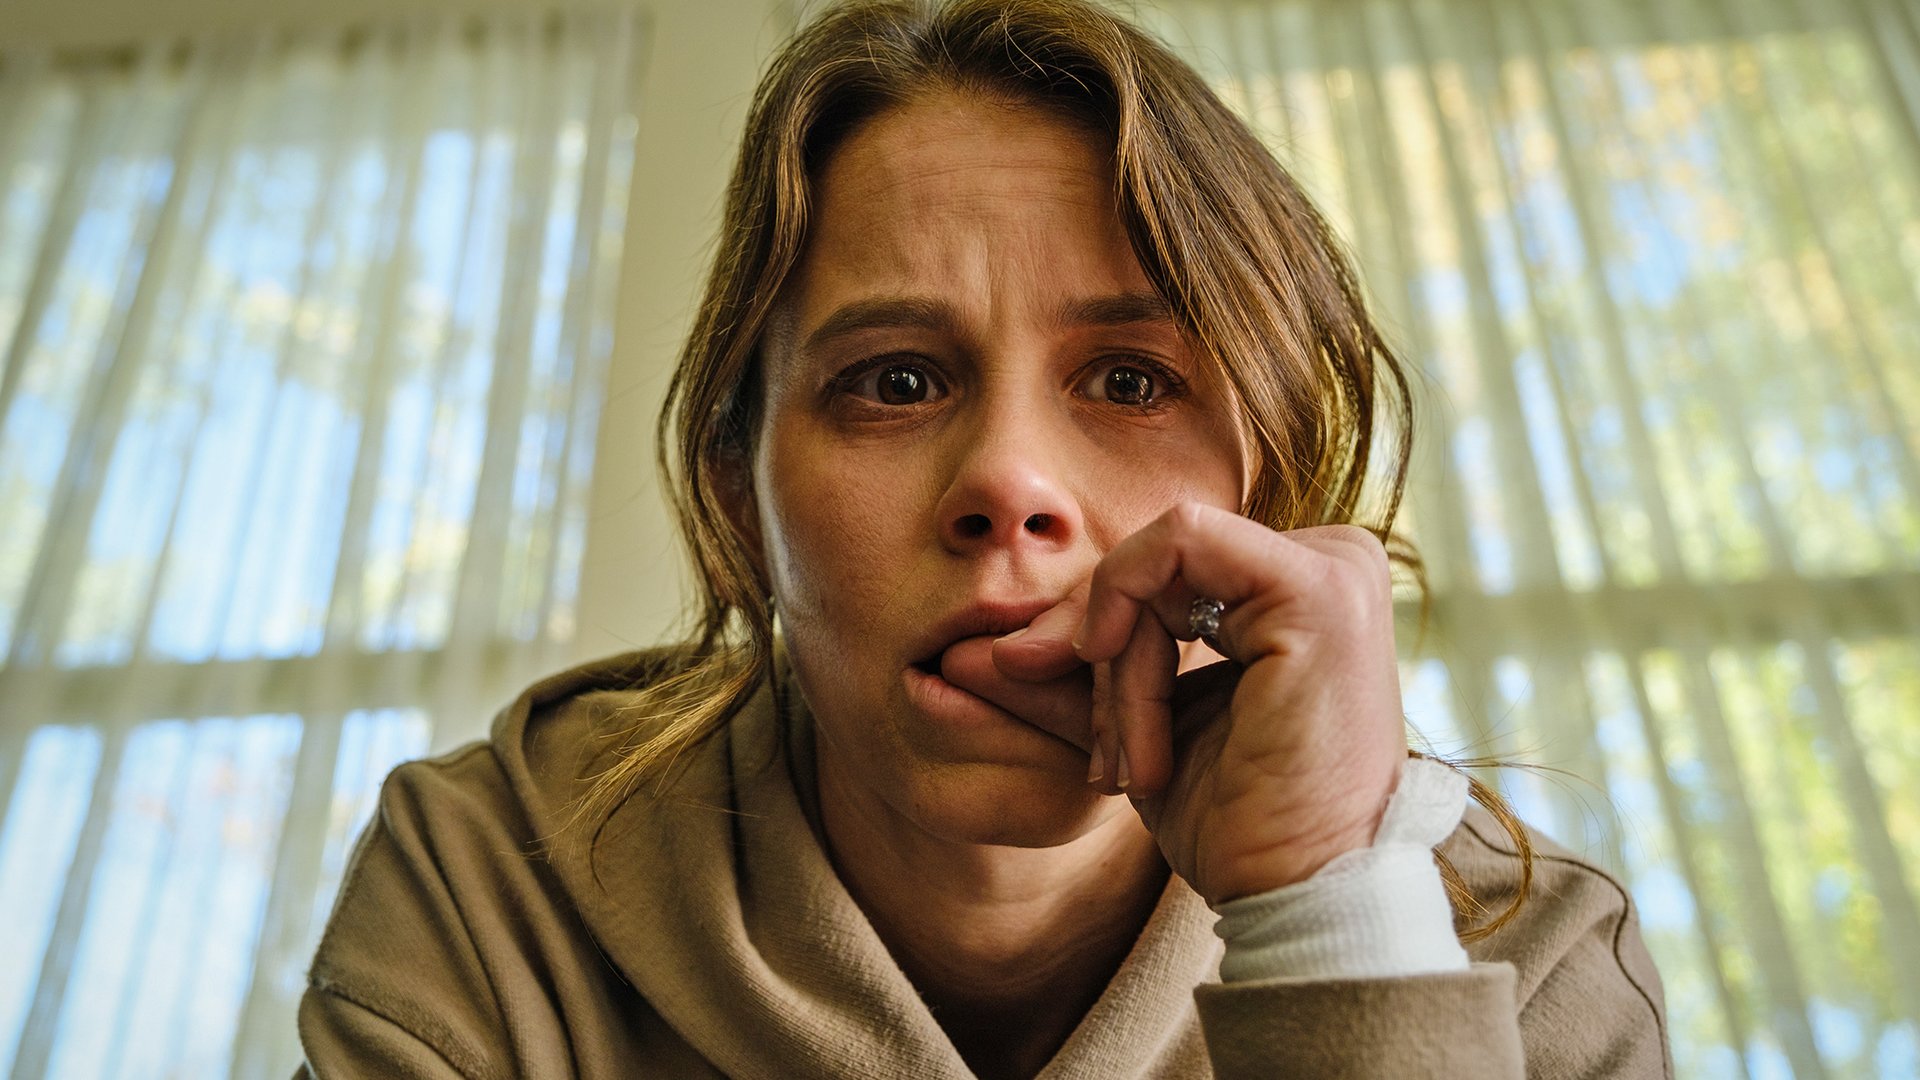 #DER Horrorfilm des Jahres? „Smile“ sorgt in Kinos für schockierte Reaktionsvideos